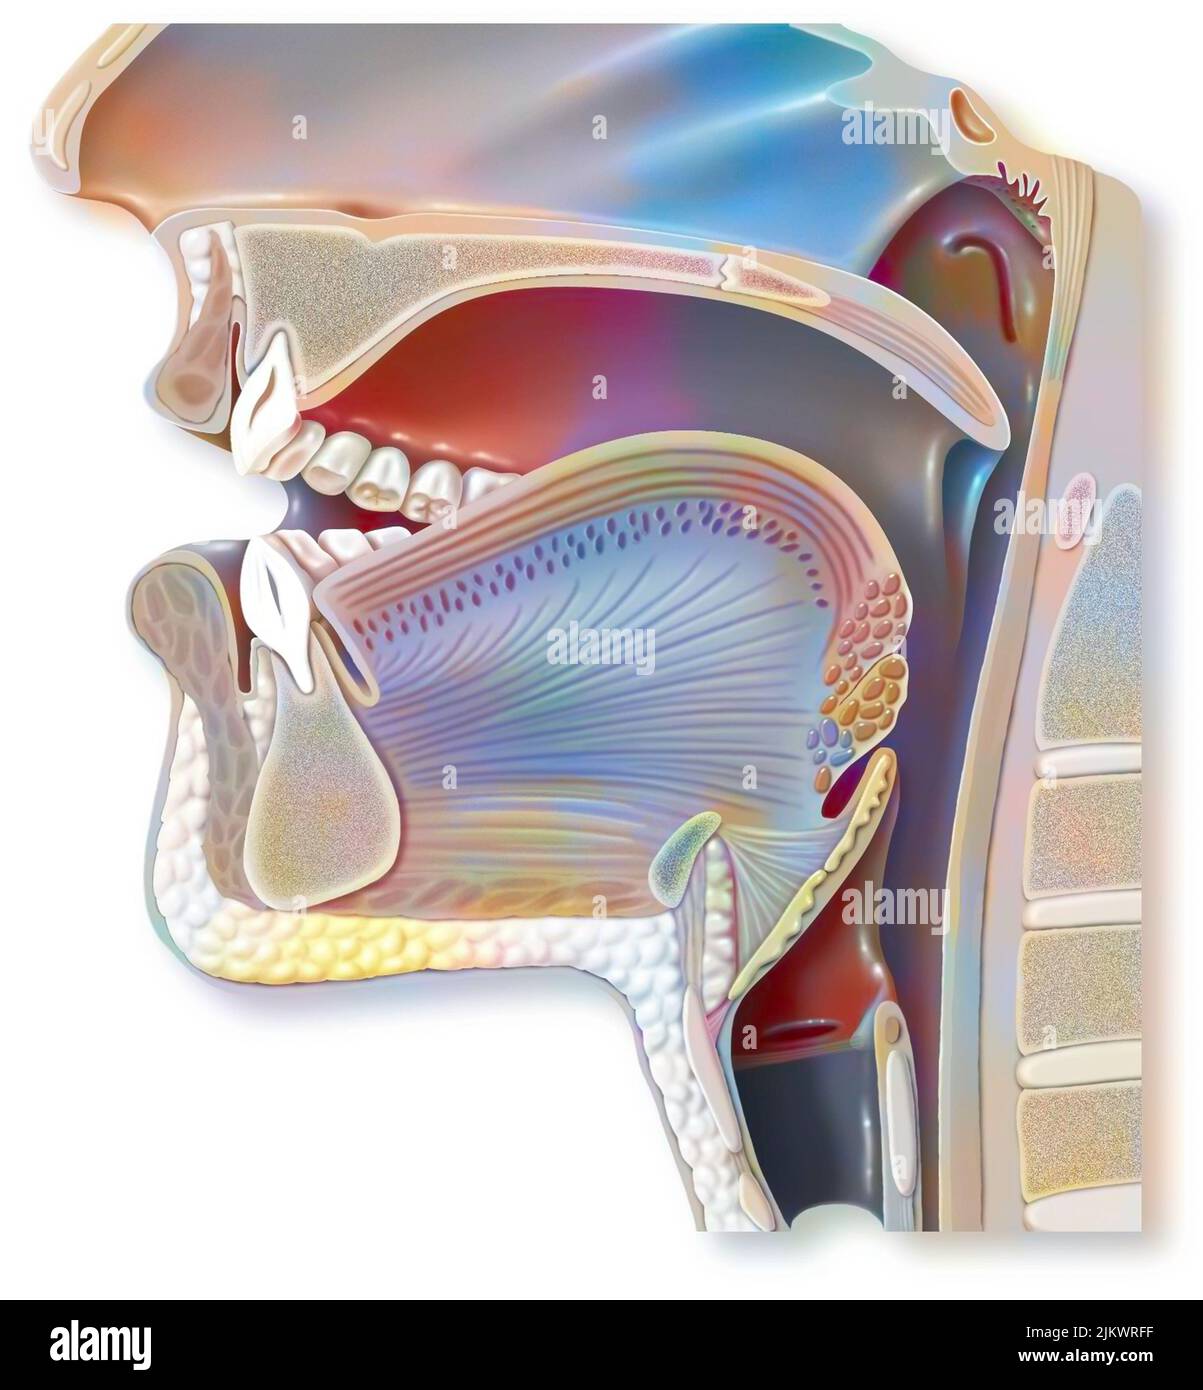 Posizionamento degli organi della bocca per pronunciare una 'A' nella fonazione. Foto Stock